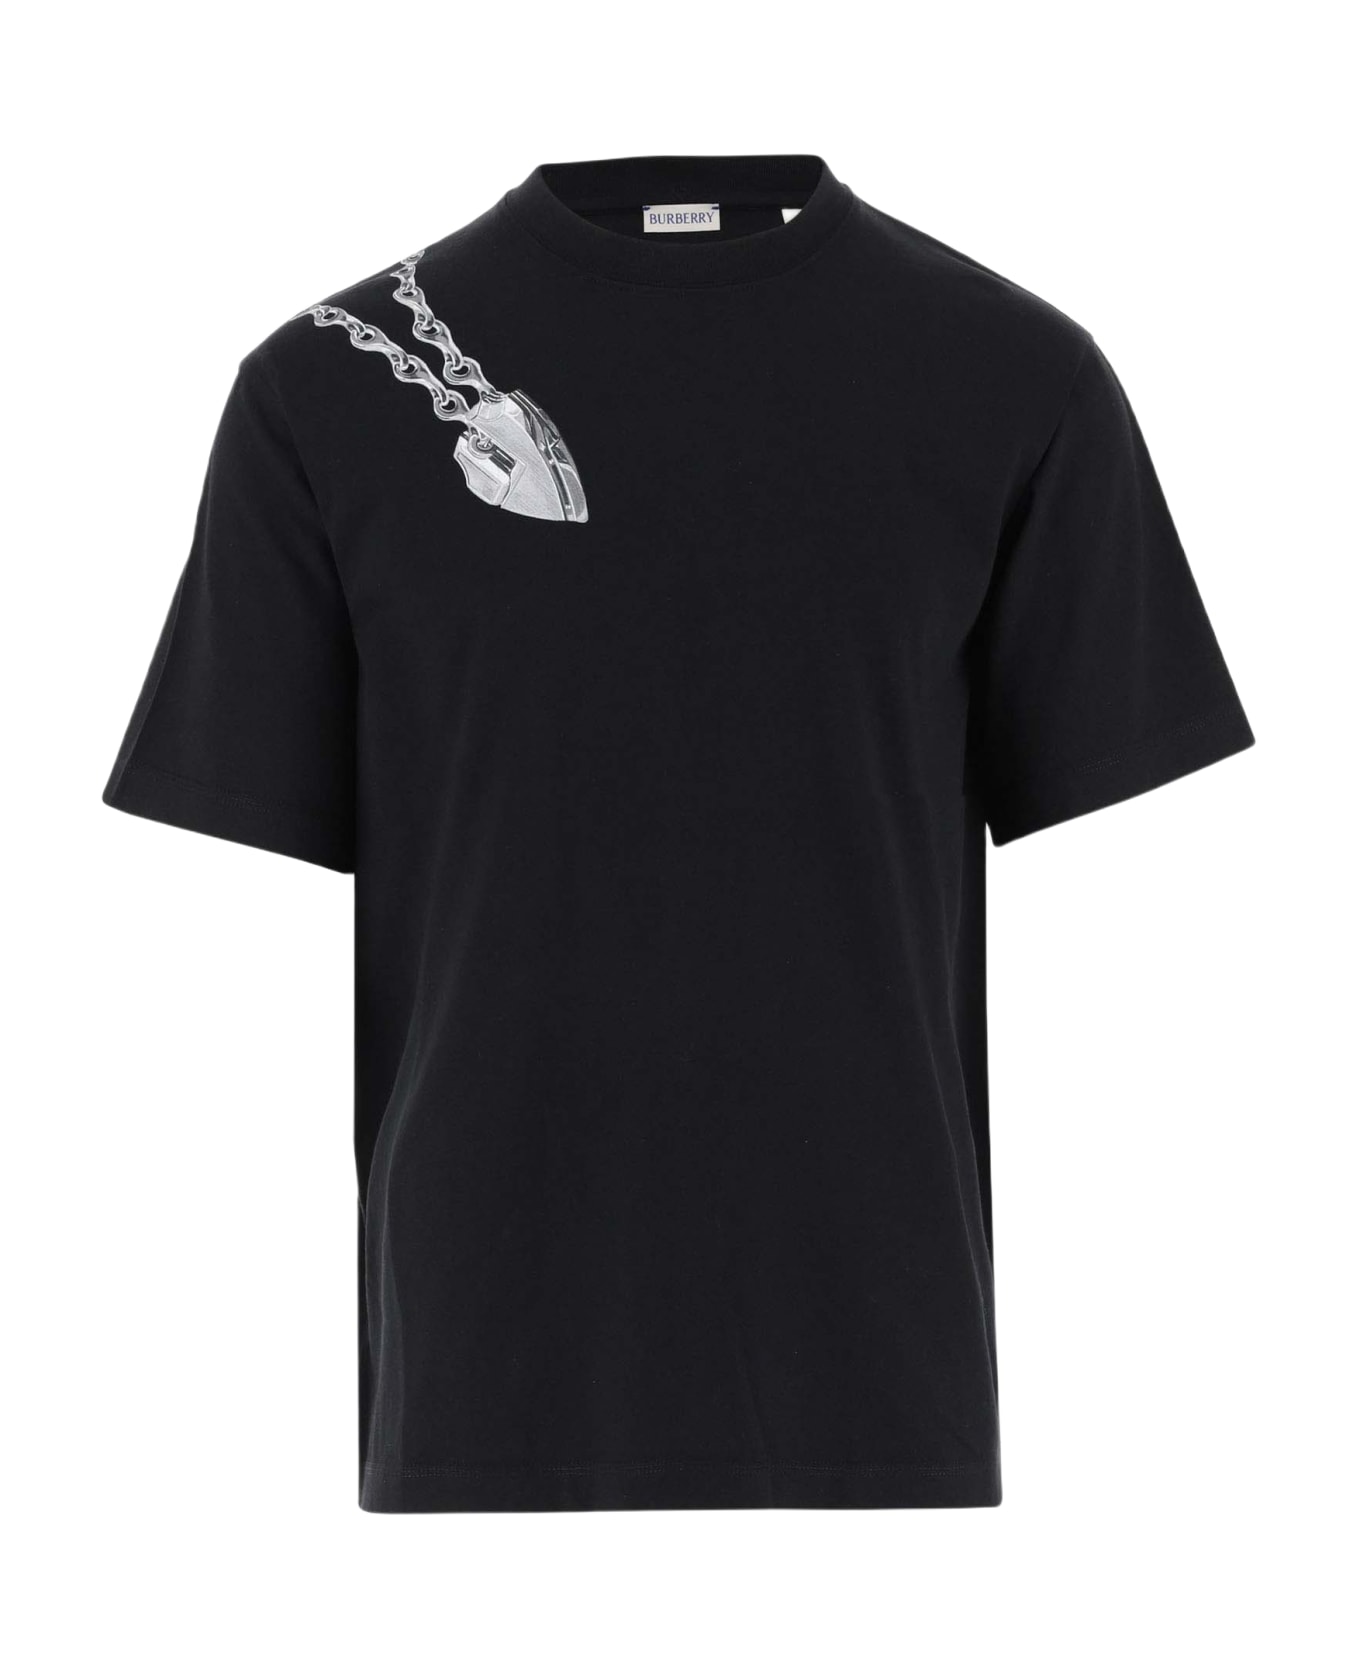 Burberry 'shield' T-shirt - Black